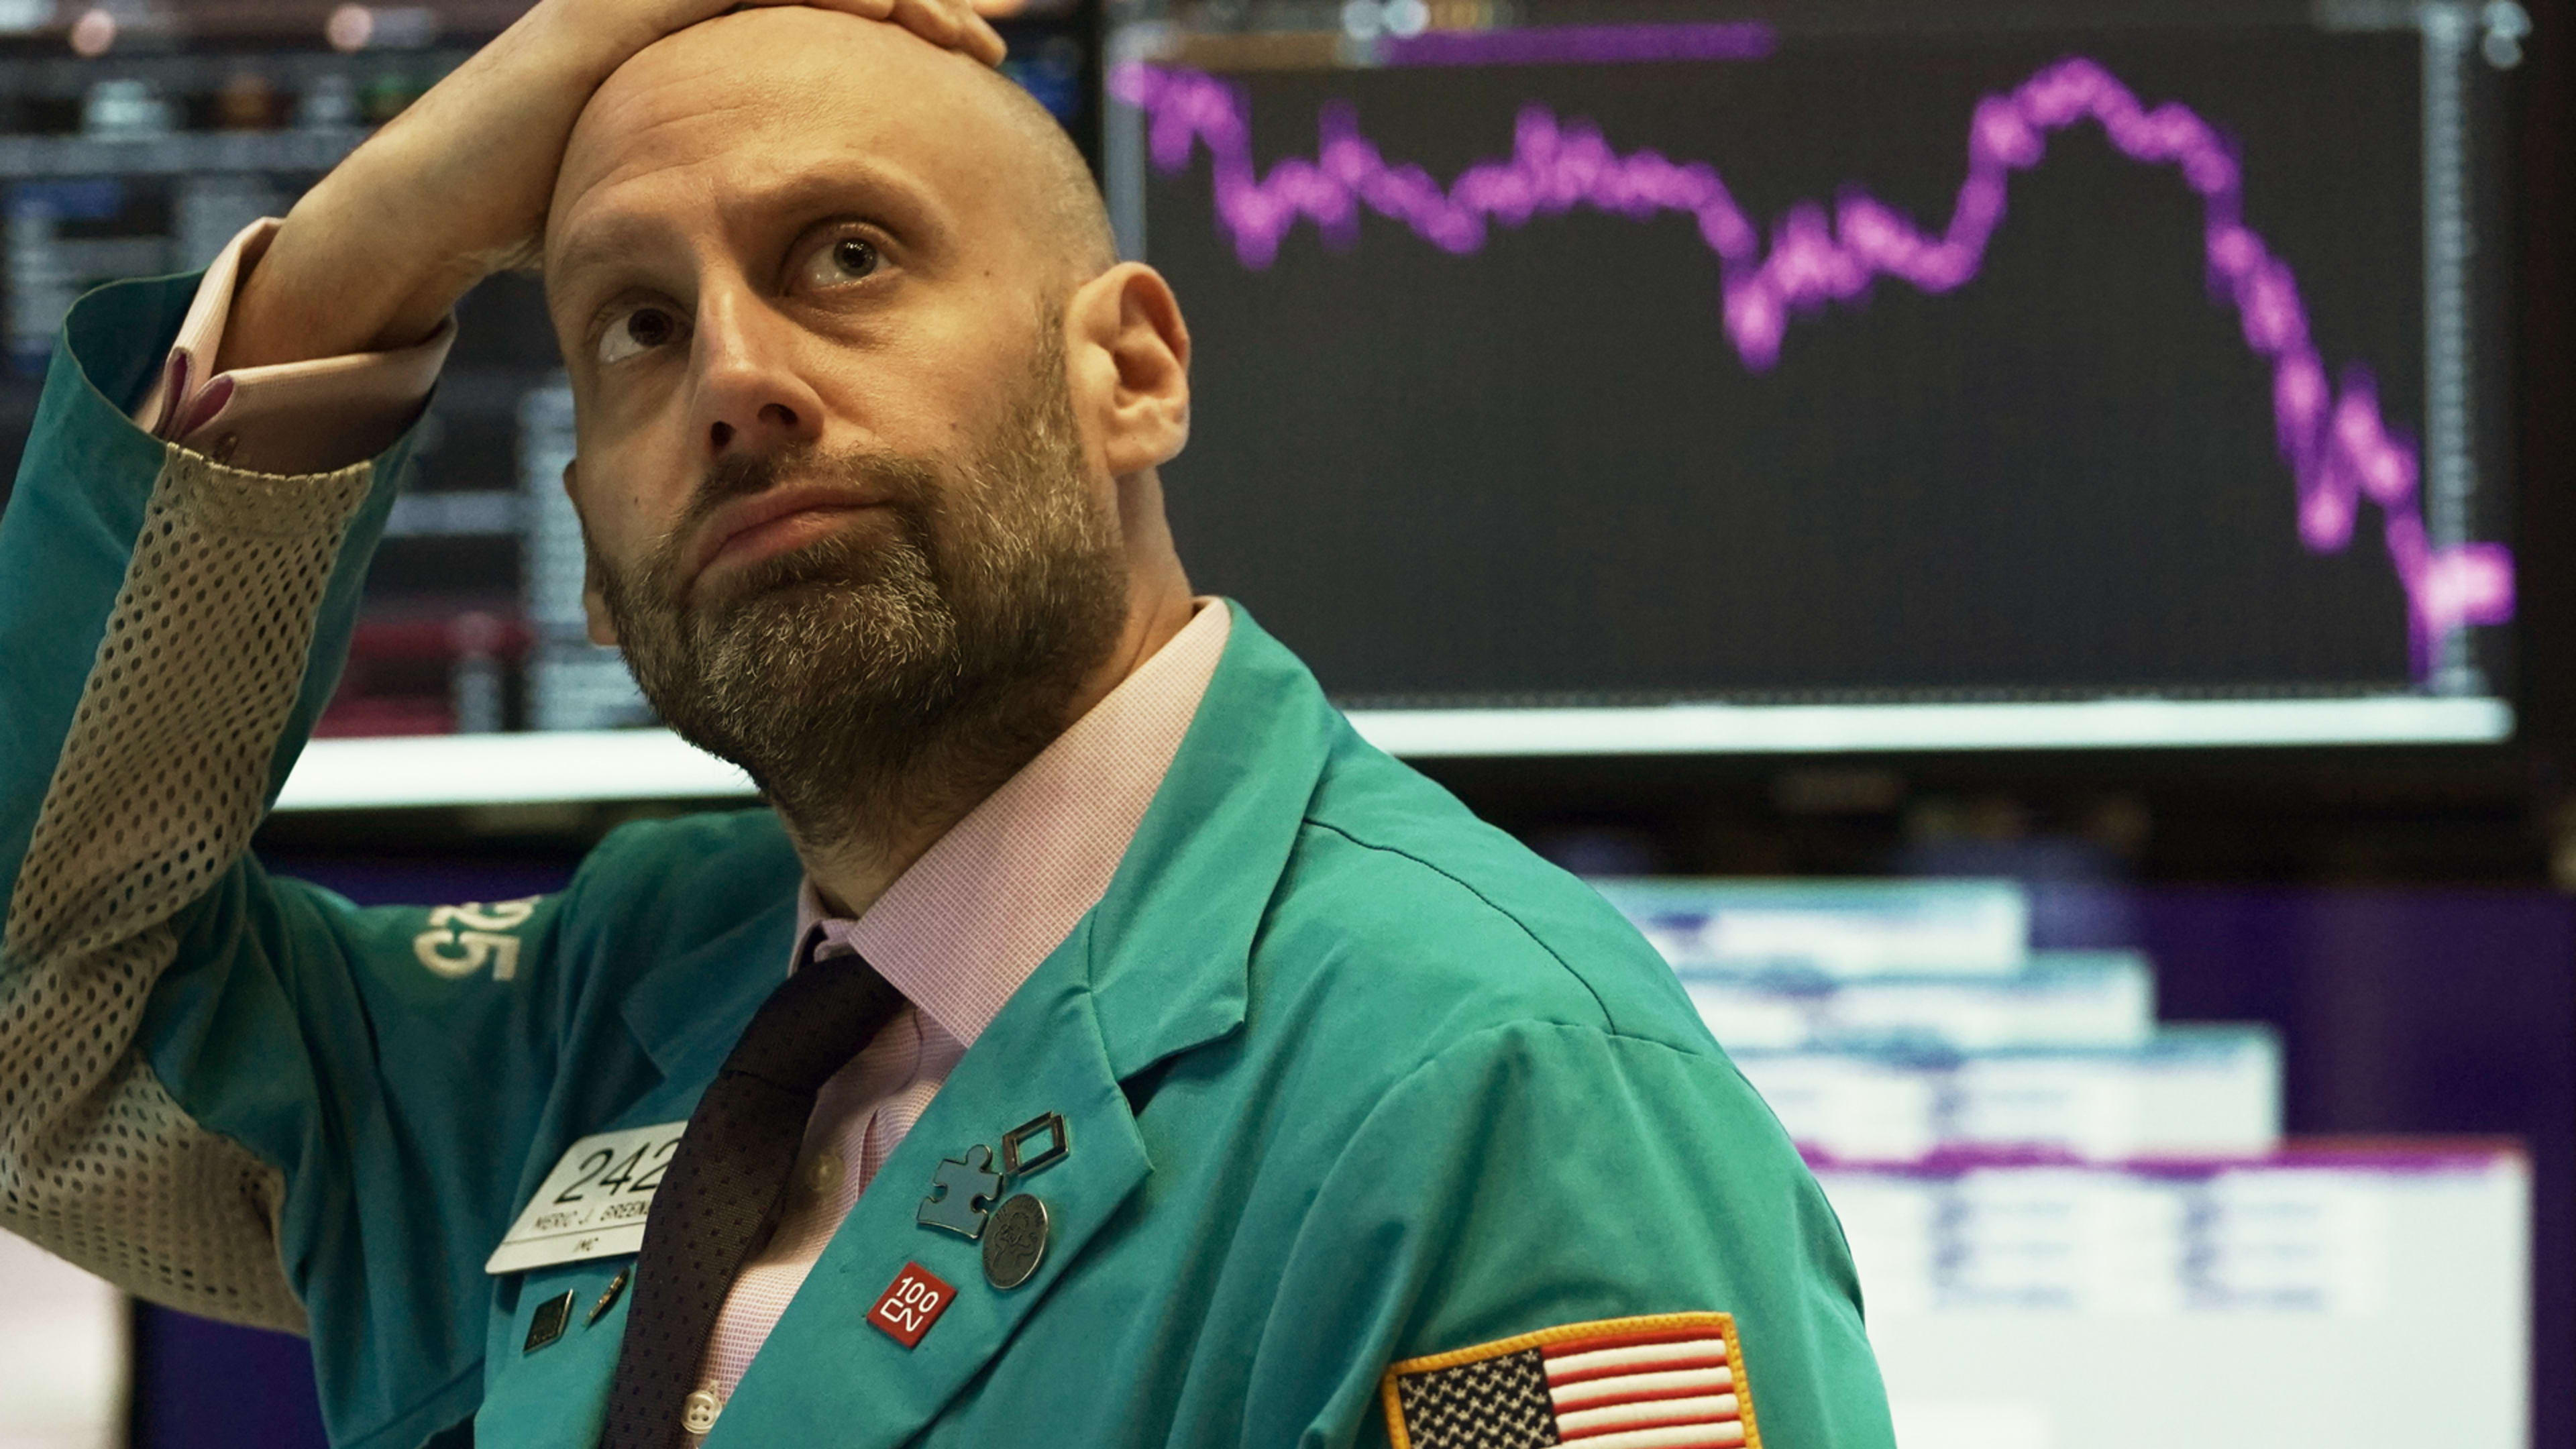 Black Monday: Stock markets plummet on coronavirus fears and oil price war